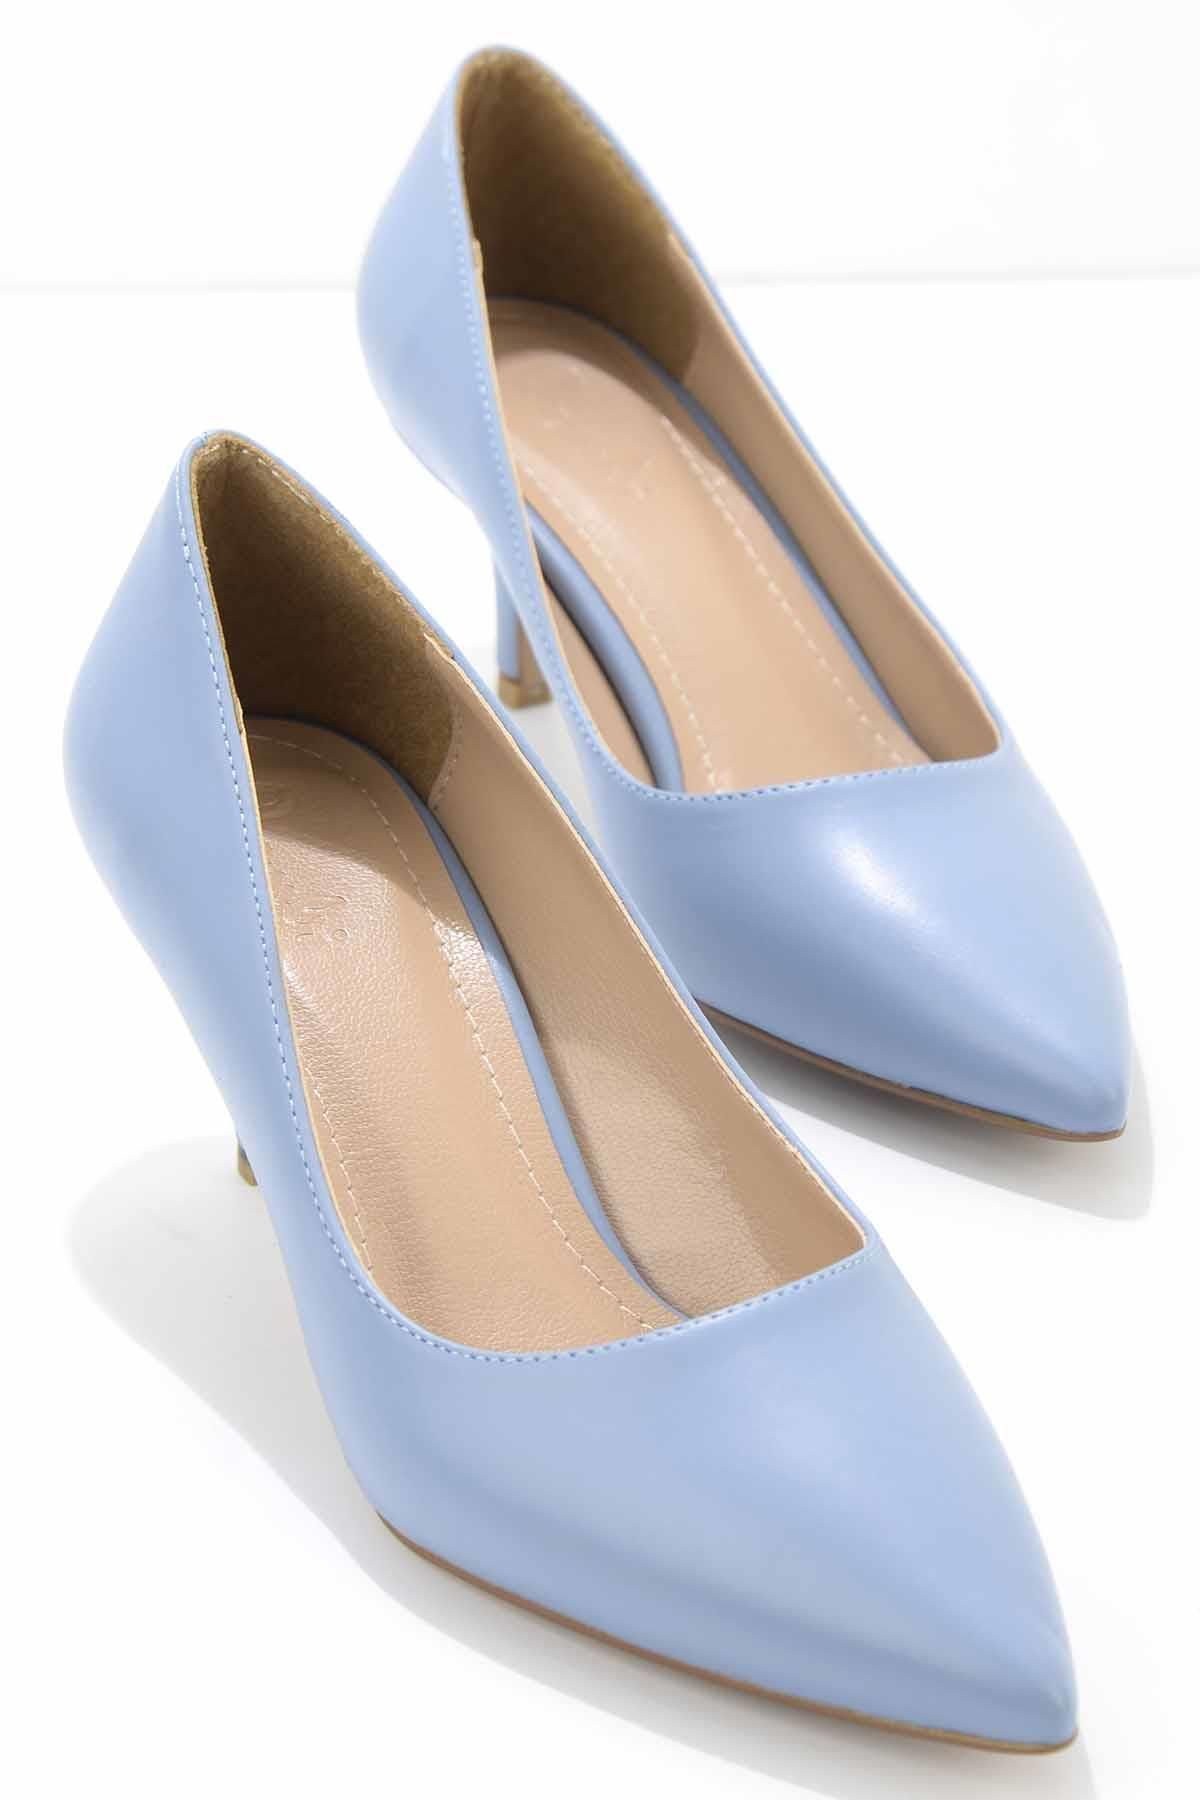 Bambi Mavi Kadın Klasik Topuklu Ayakkabı K01232010009